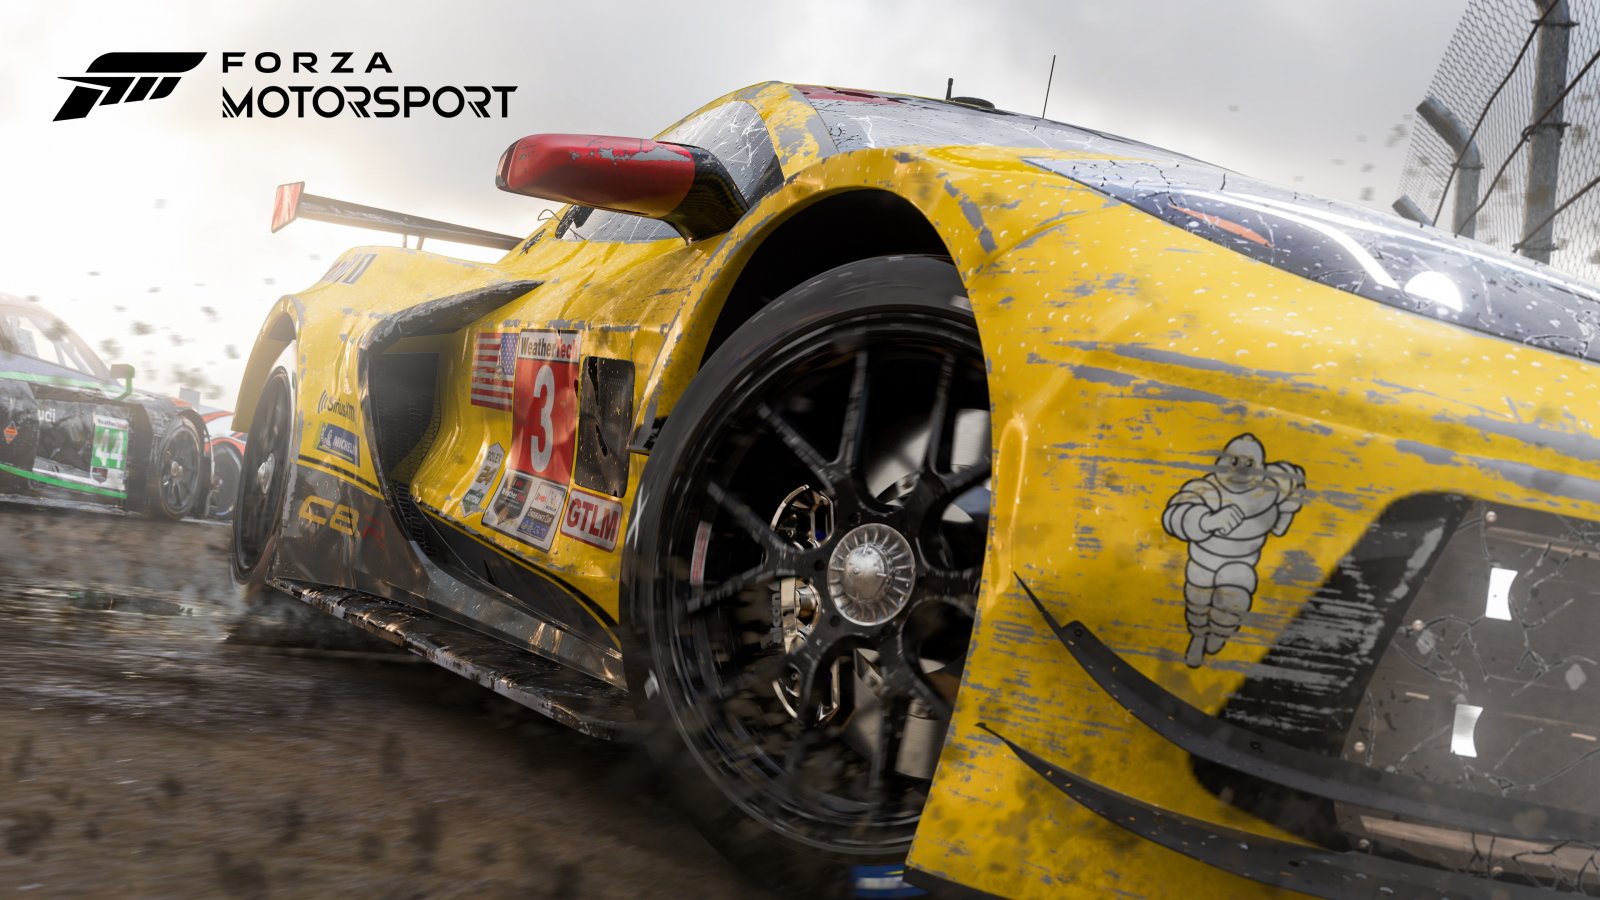 Forza Motorsport, video con 17 minuti di gameplay catturato su Xbox